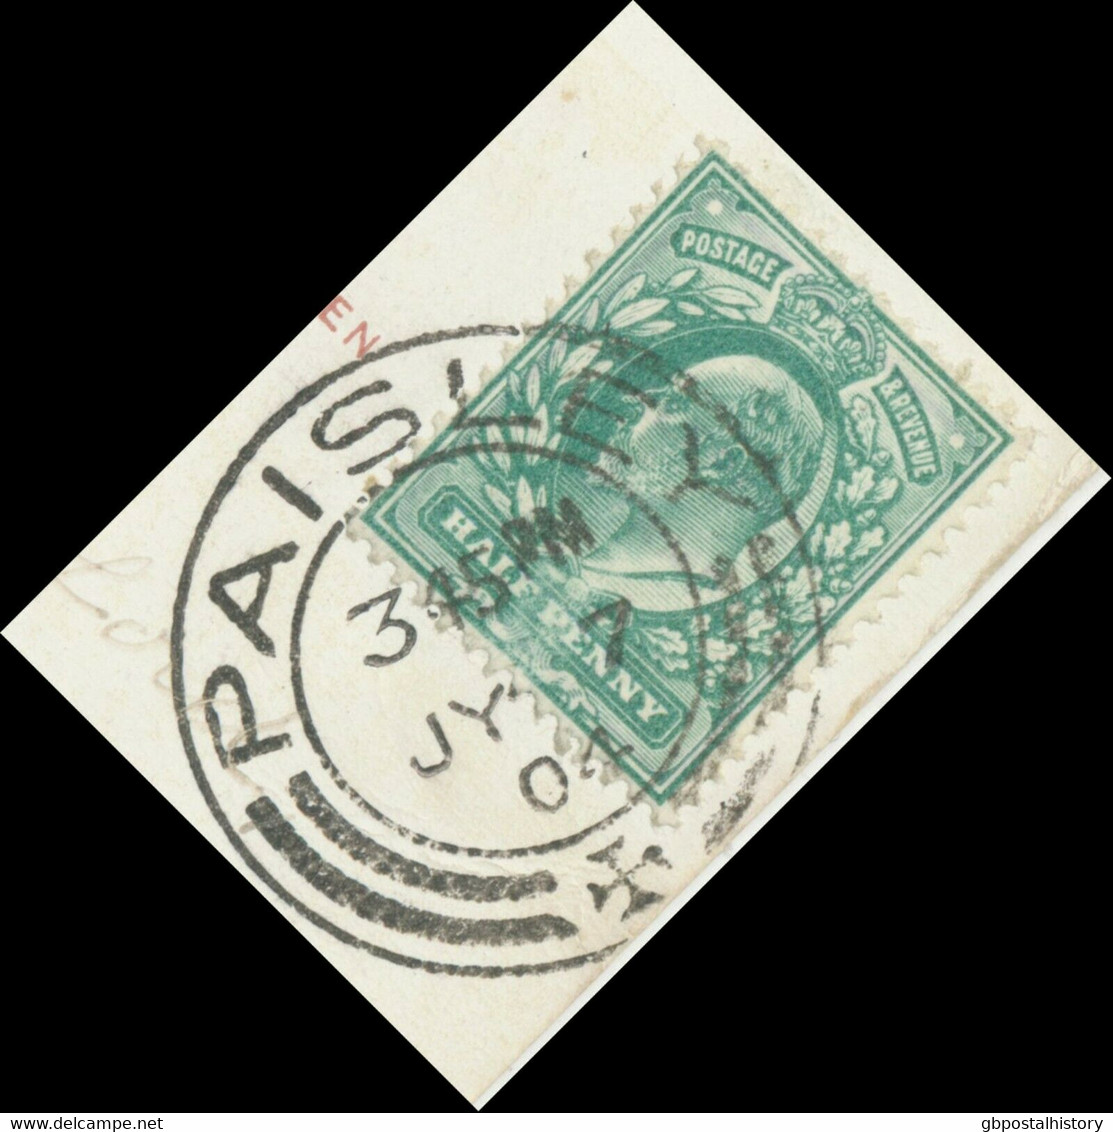 GB SCOTTISH VILLAGE POSTMARKS „PAISLEY“ Superb Strike (28mm, Time Code „3 45PM“) On VF Postcard (Marie Studholme) 1904 - Schottland